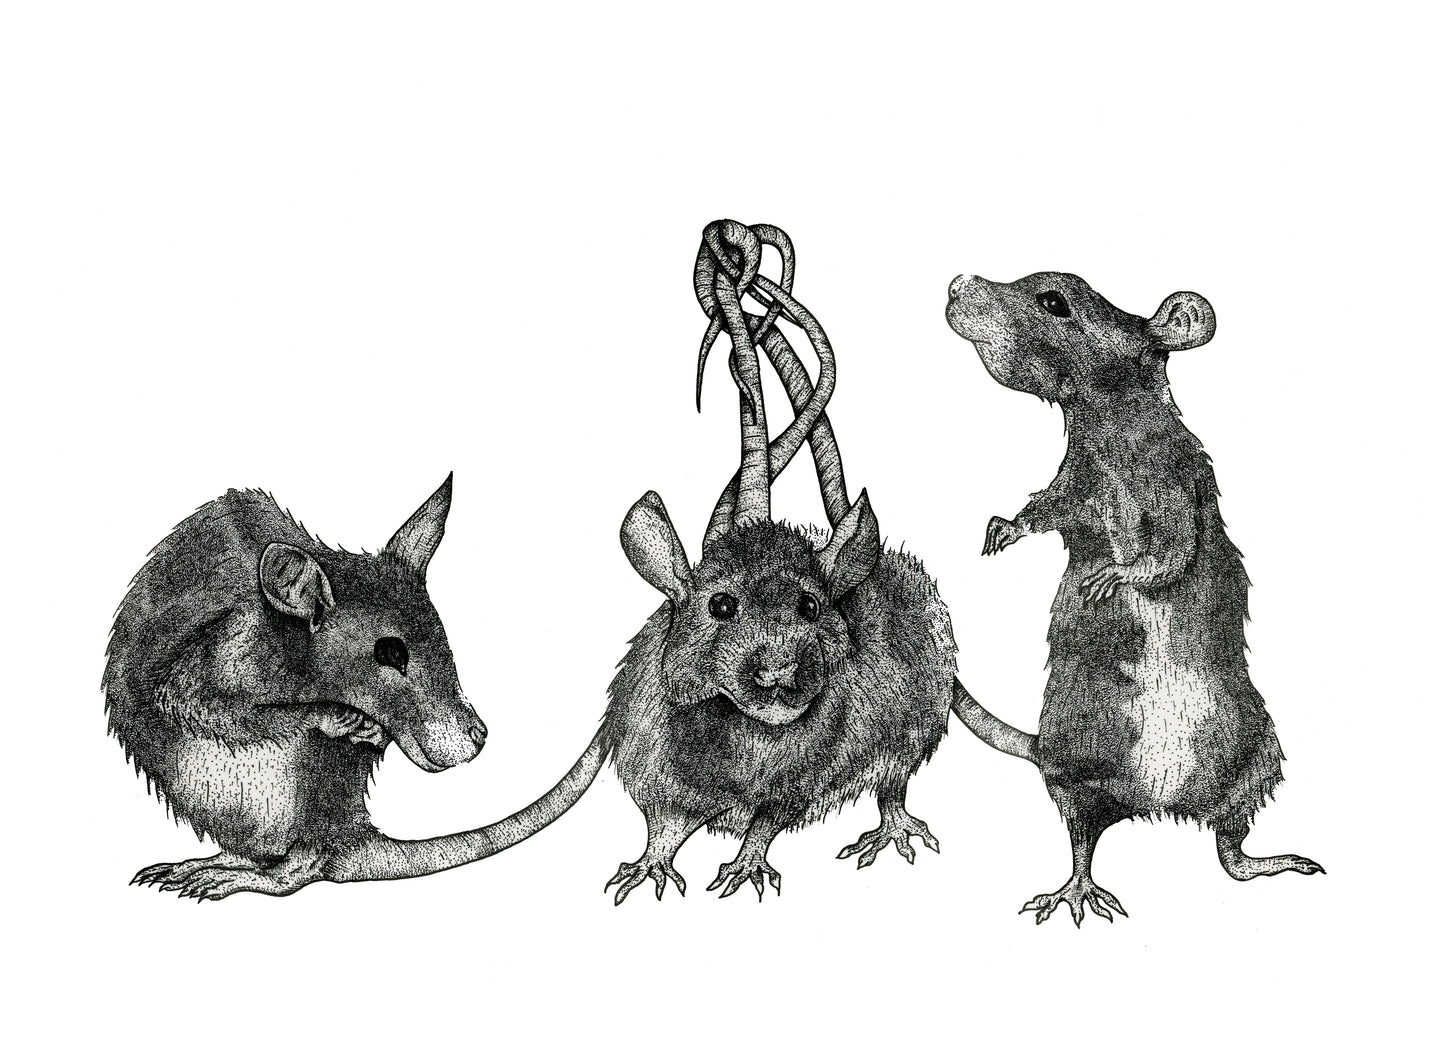 King Rat - Rat King - Pin